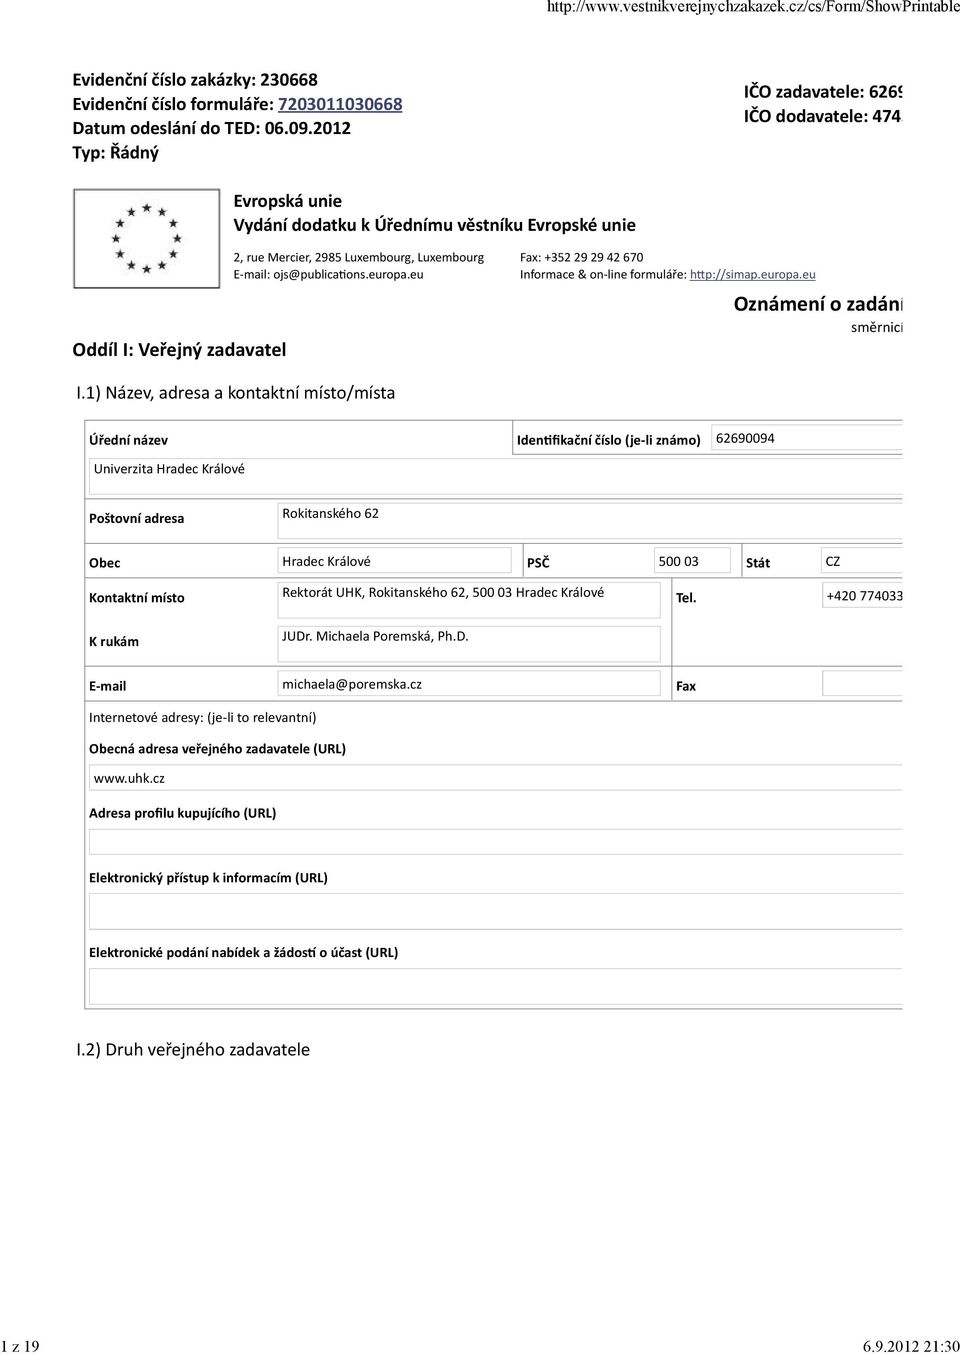 ojs@publica ons.europa.eu Fax: +352 29 29 42 670 Informace & on-line formuláře: h p://simap.europa.eu Oznámení o zadání směrnicí I.